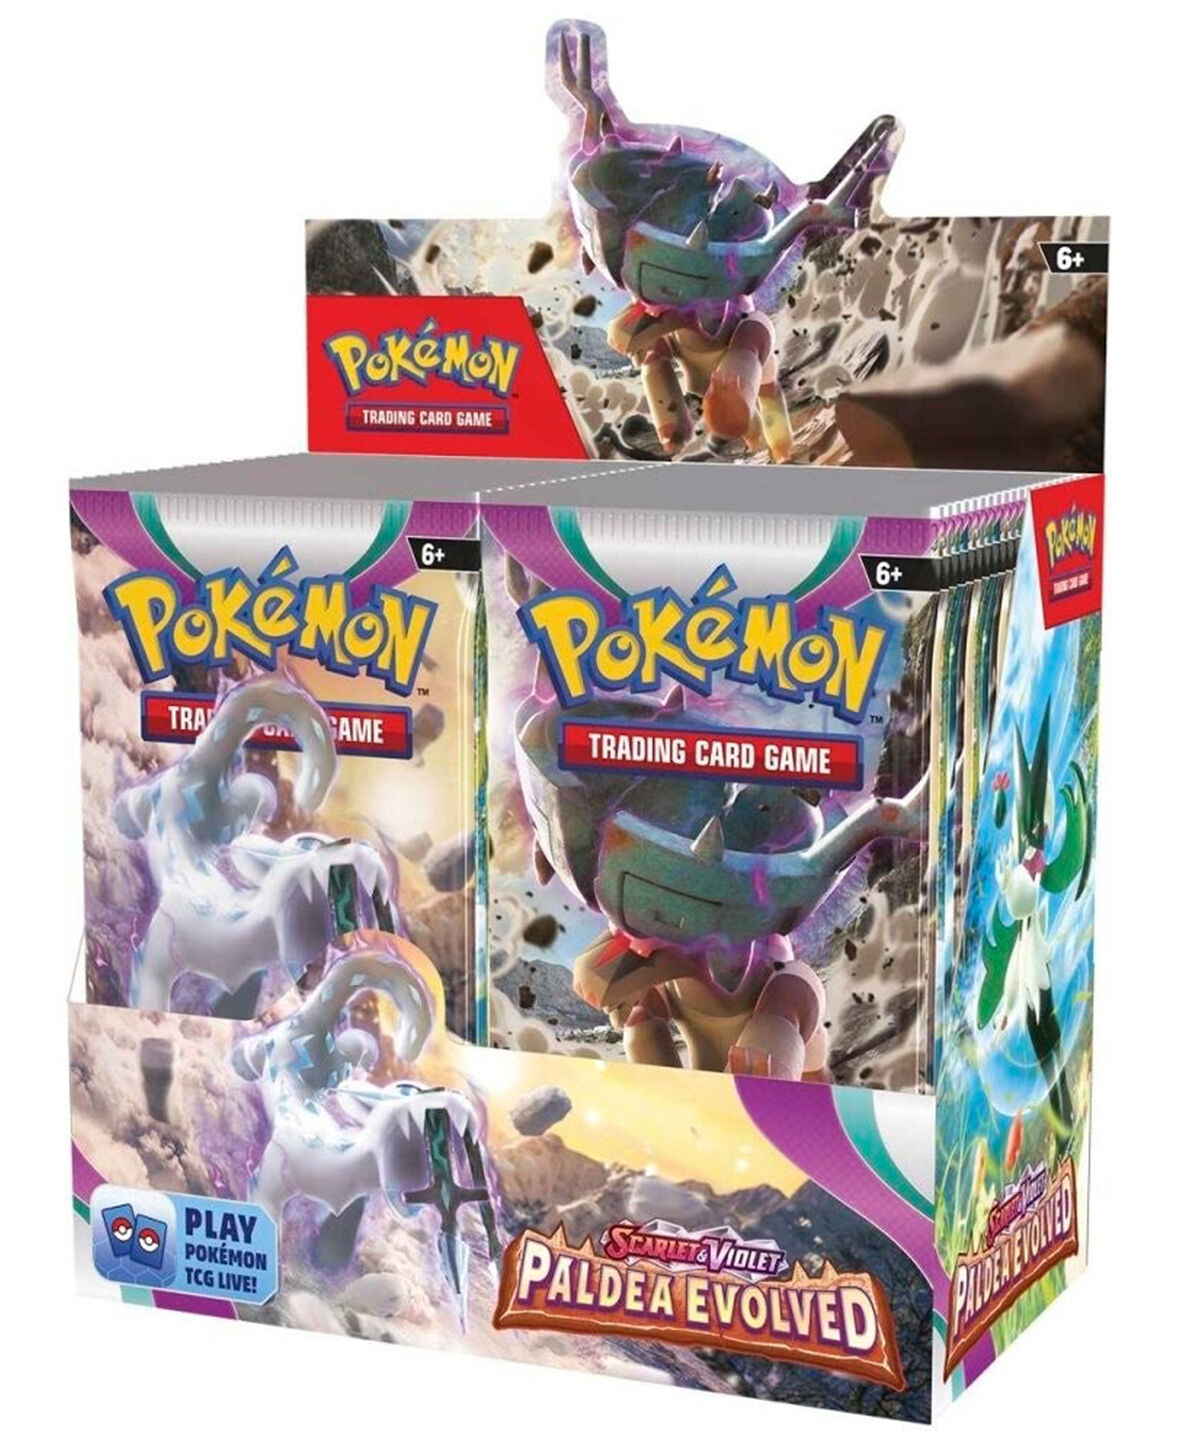 Pokémon TCG: Scarlet & Violet-Paldea Evolved Booster Display Box (36 Packs) - EN